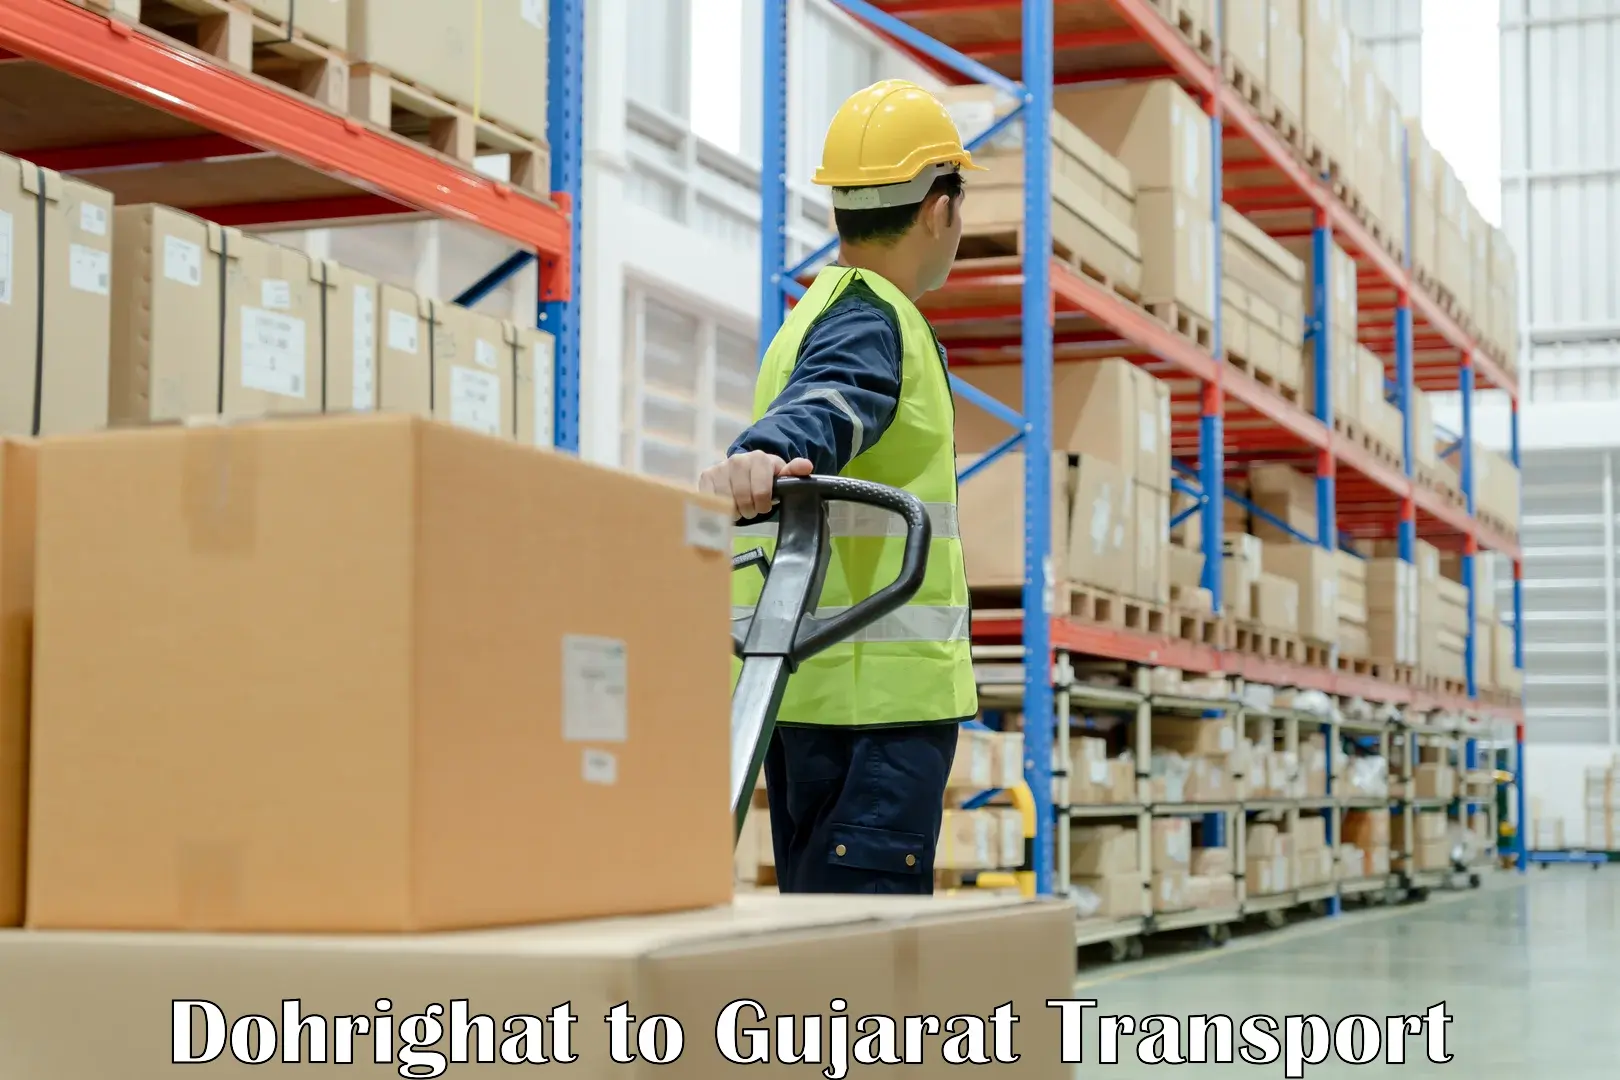 Online transport service Dohrighat to Gujarat